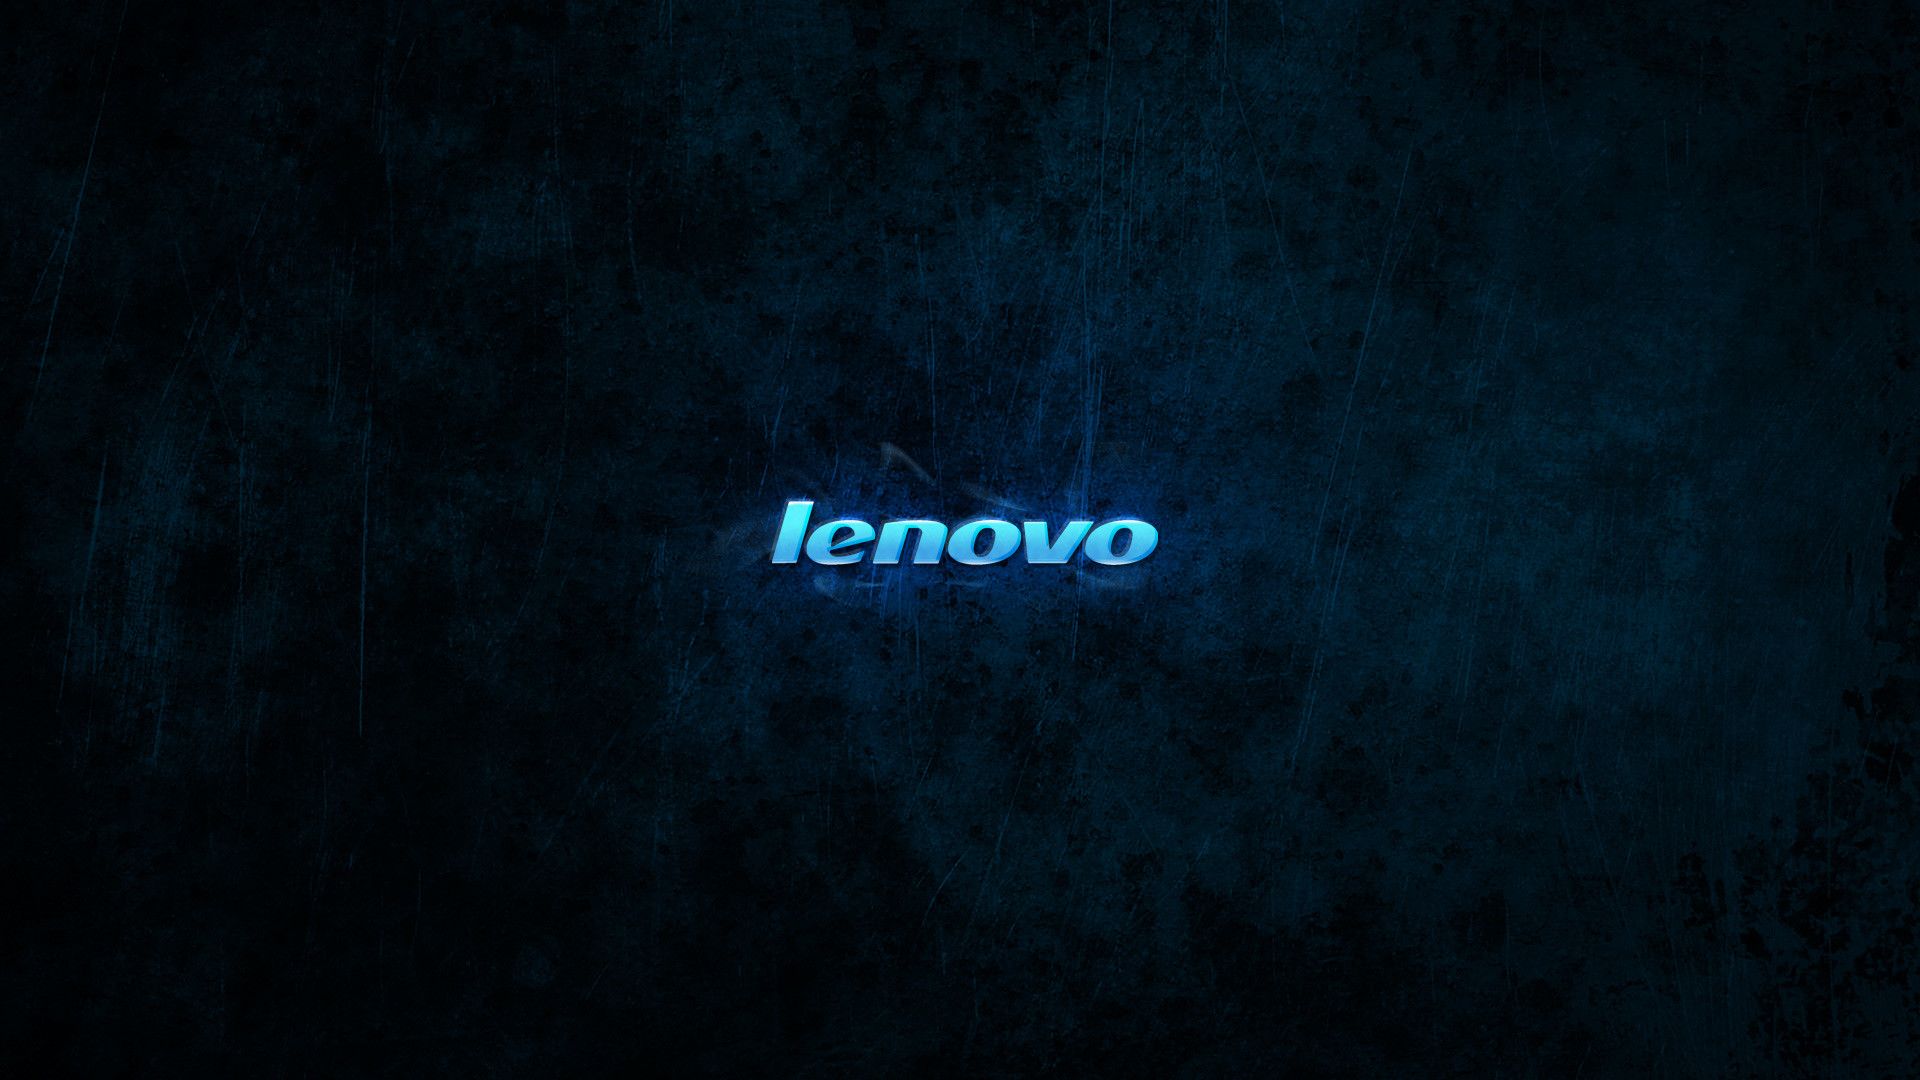 Lenovo 4K Wallpapers